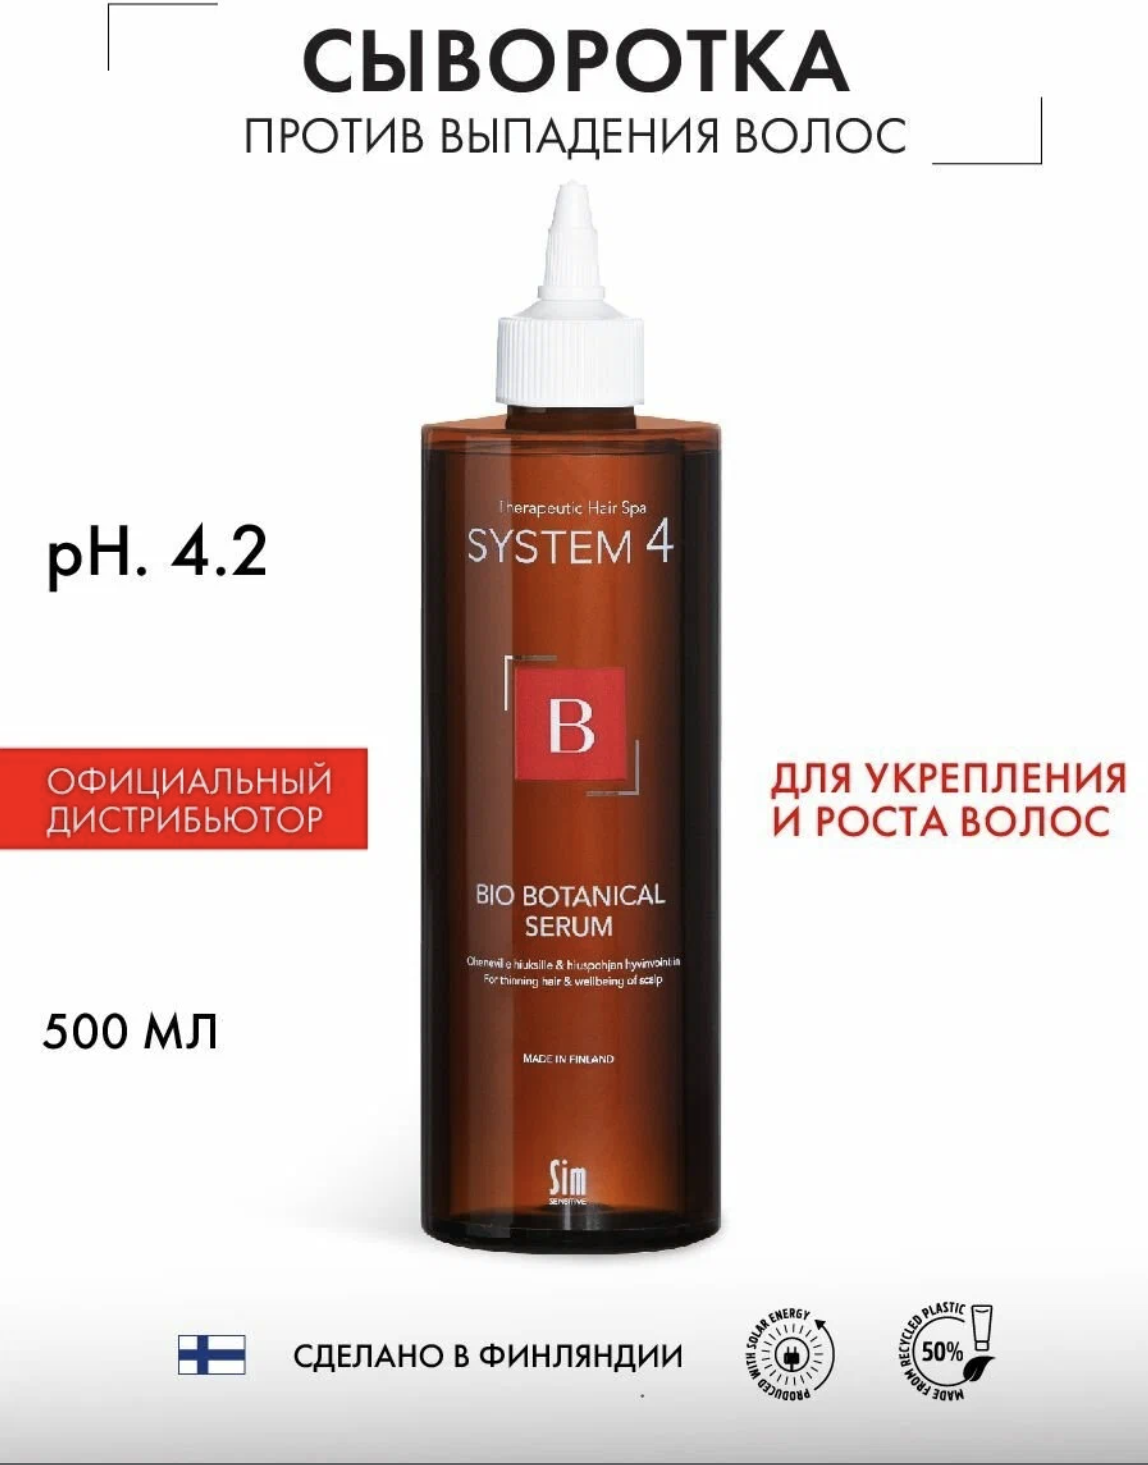 System 4 Sim Sensitive Bio Botanical Serum - Био Ботаническая сыворотка 500 мл